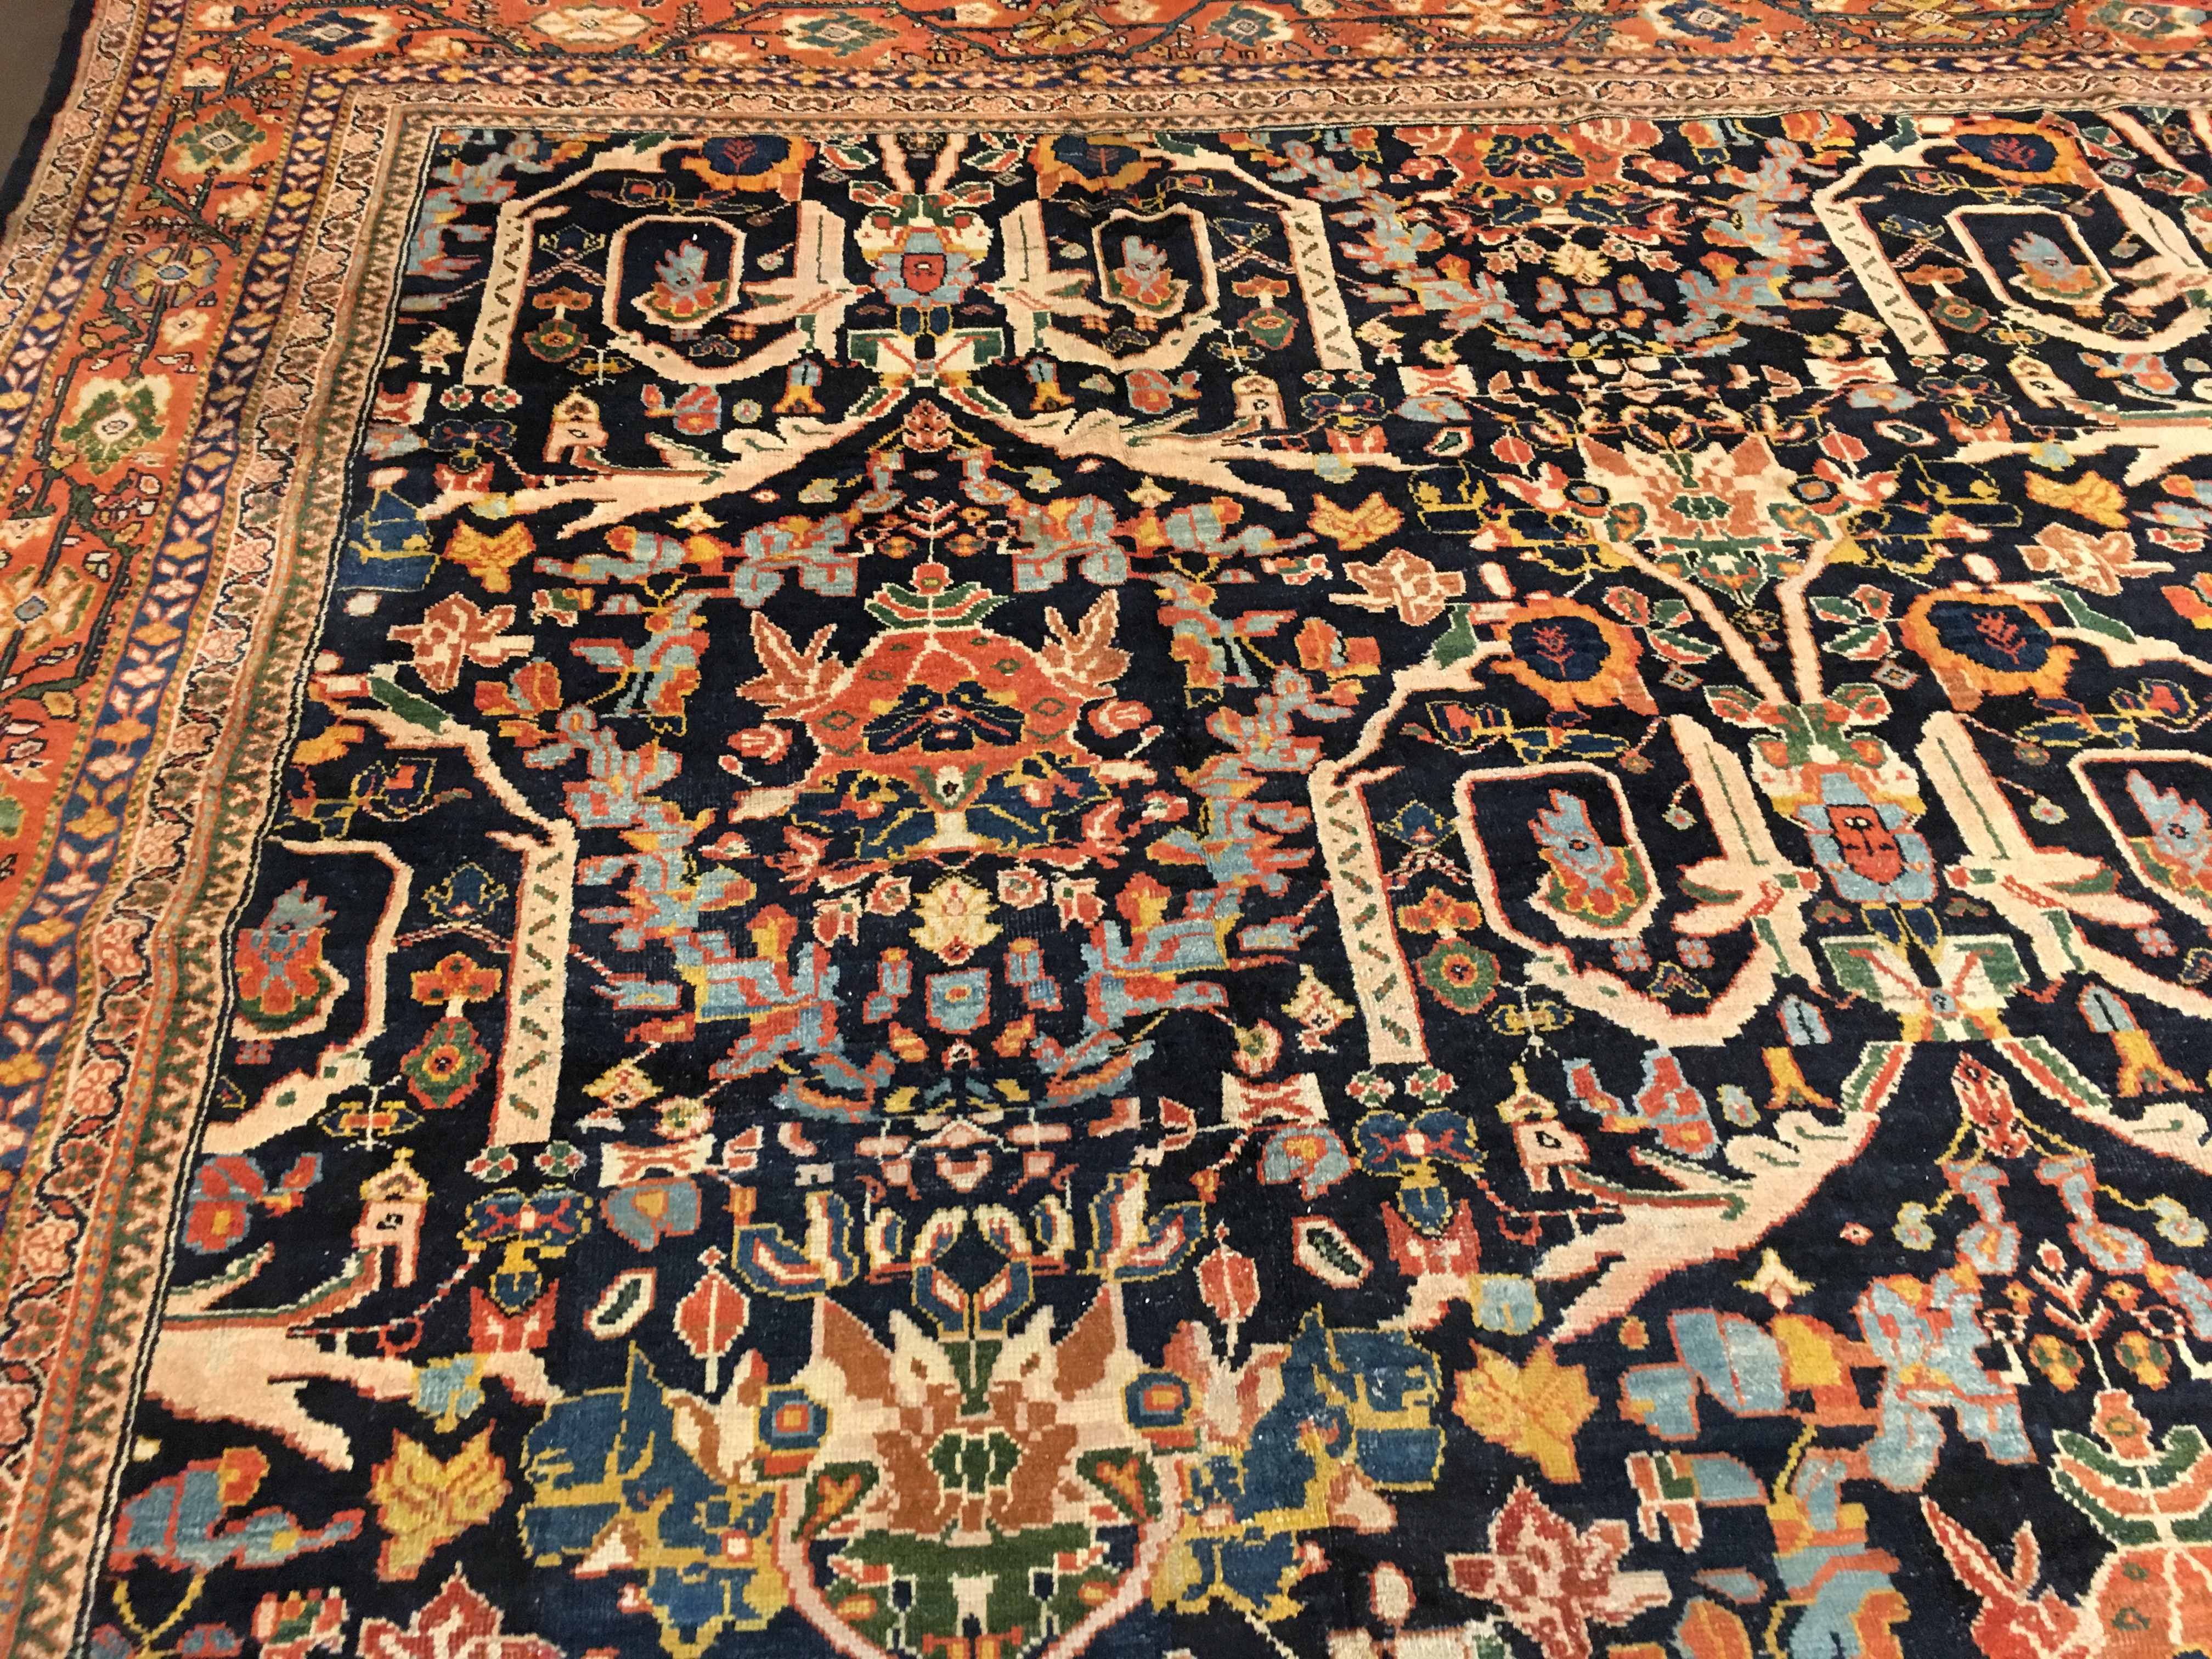 Antique mahal Carpet - # 53729